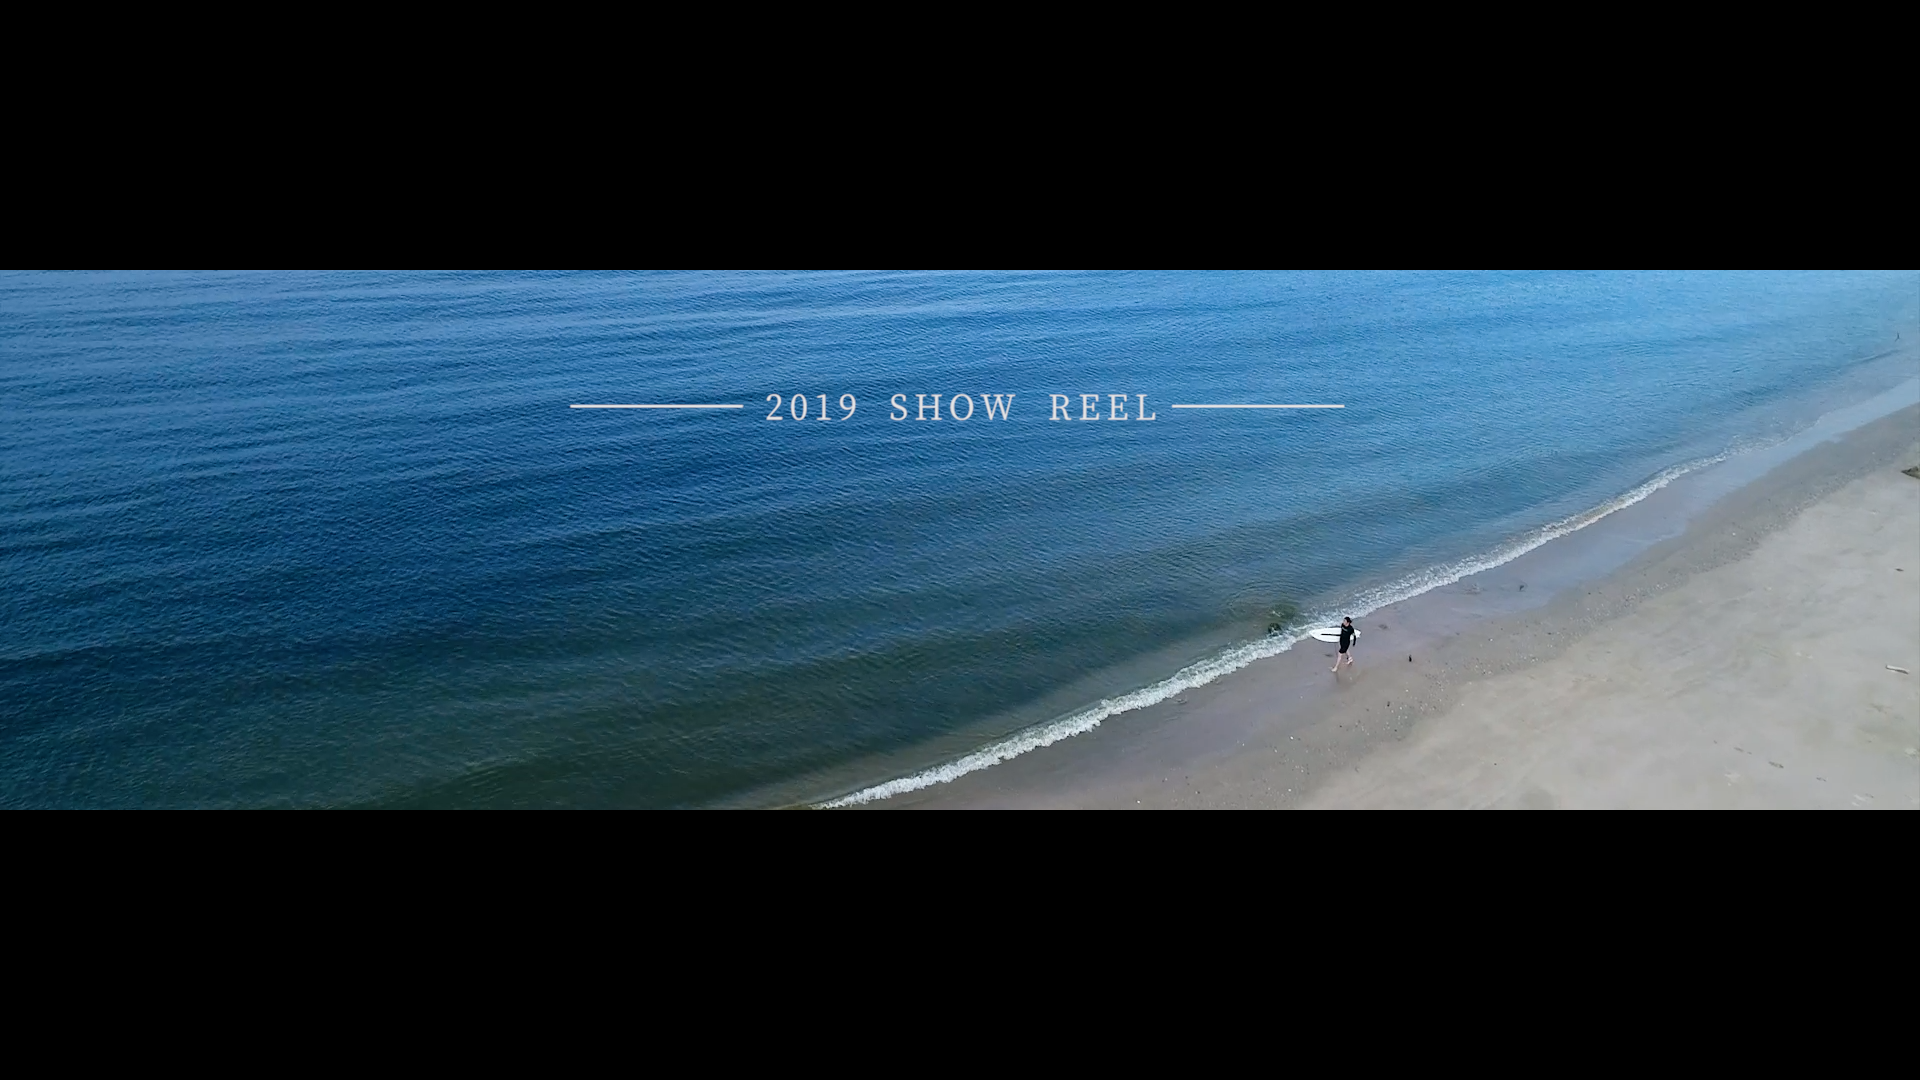 2019 SHOW REEL